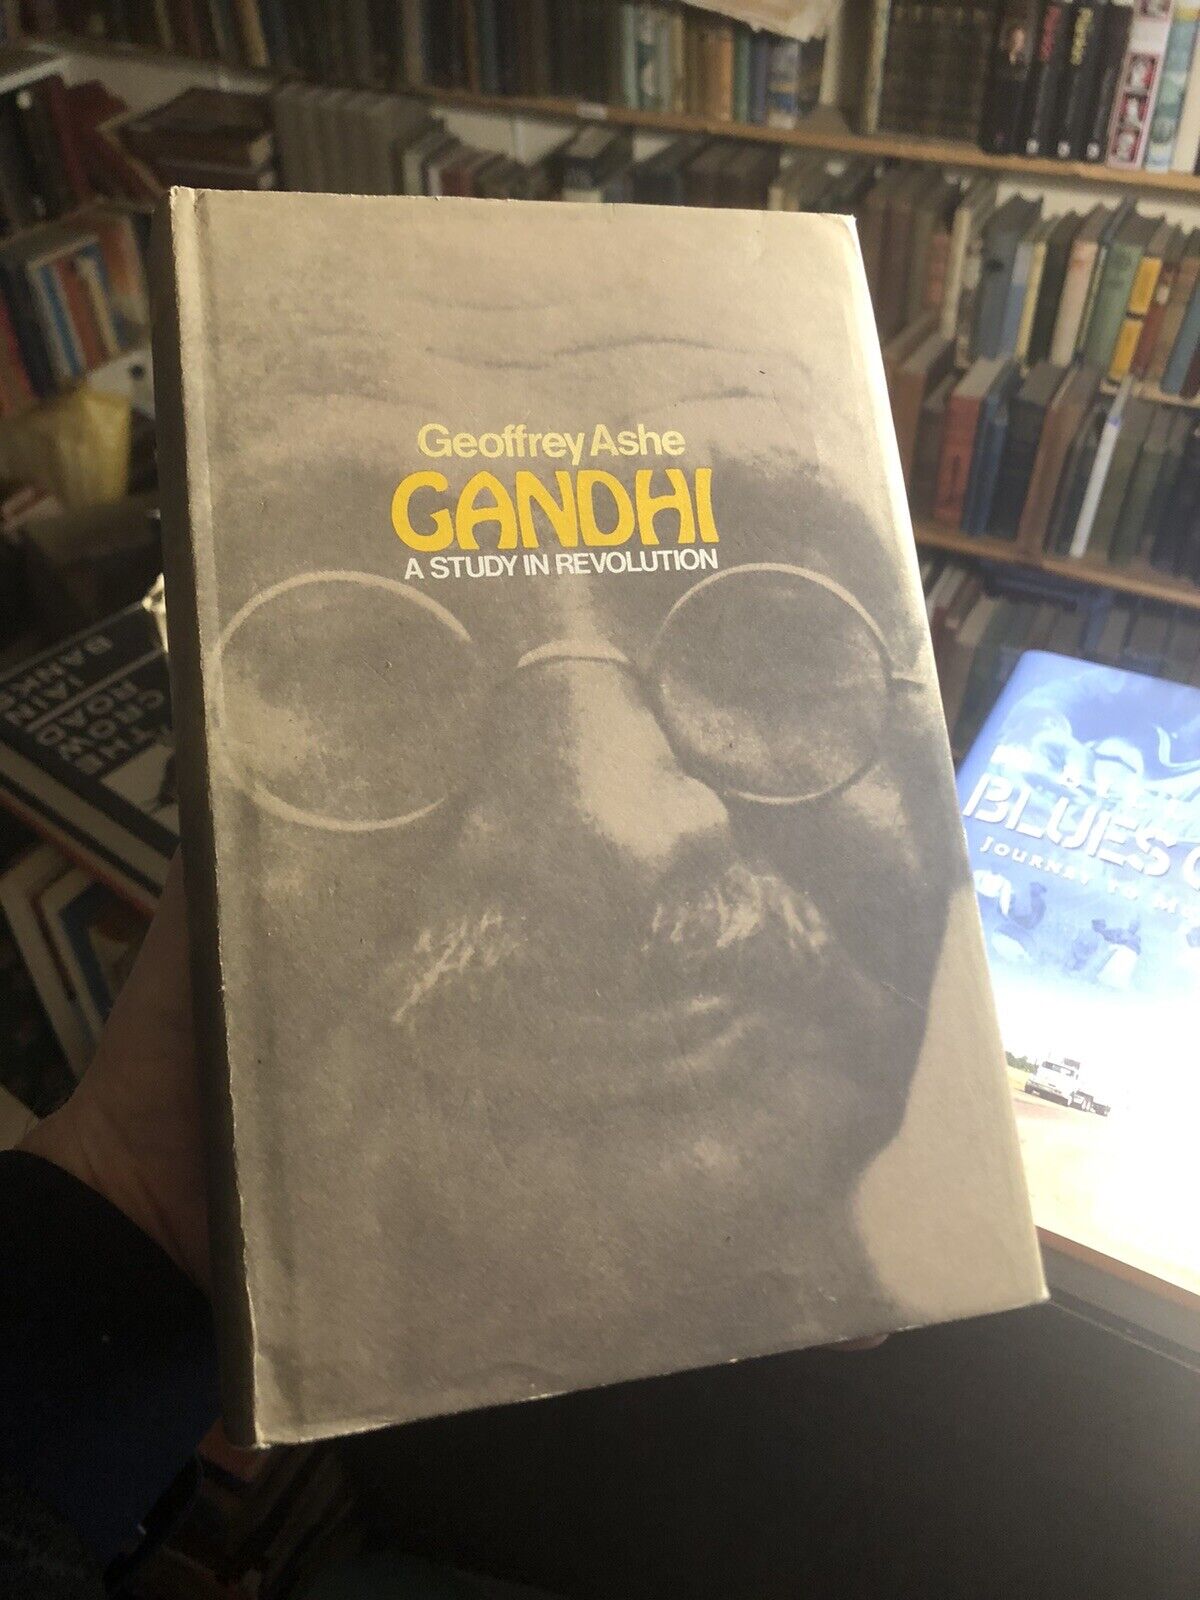 Gandhi A Study in Revolution : Geoffrey Ashe 1968